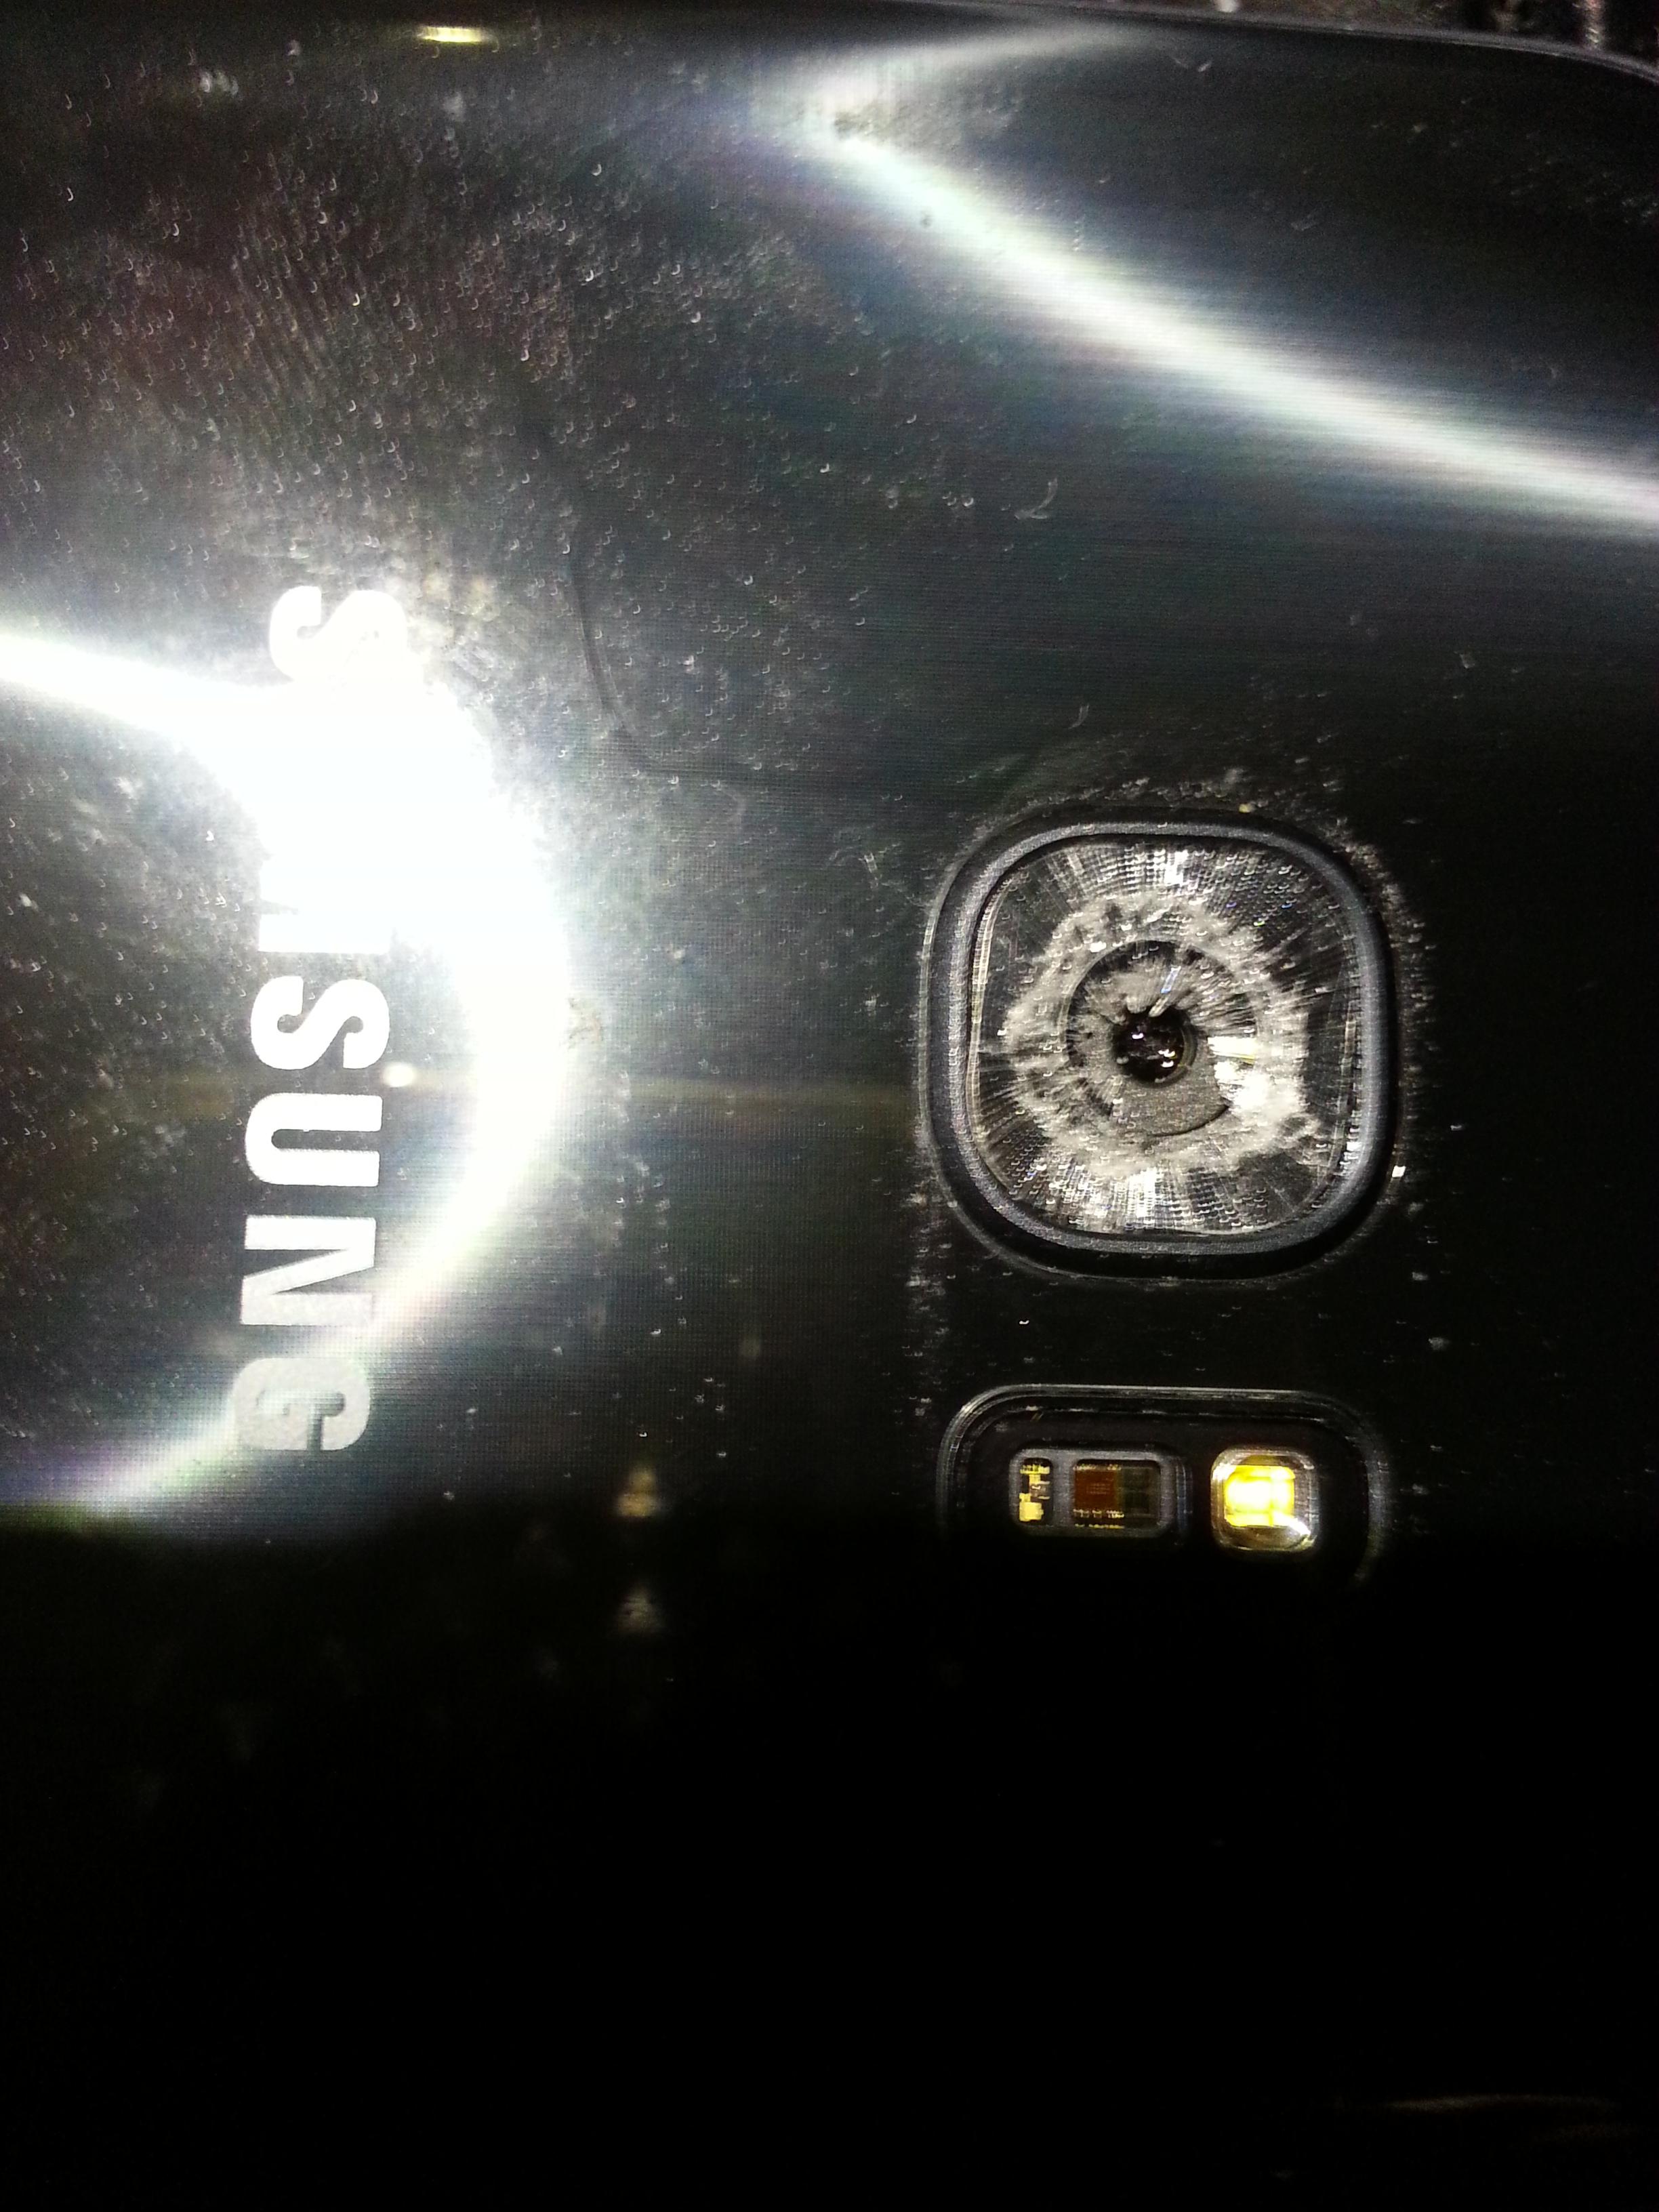 Rotura espontanea del cristal de la cámara trasera - Samsung Community